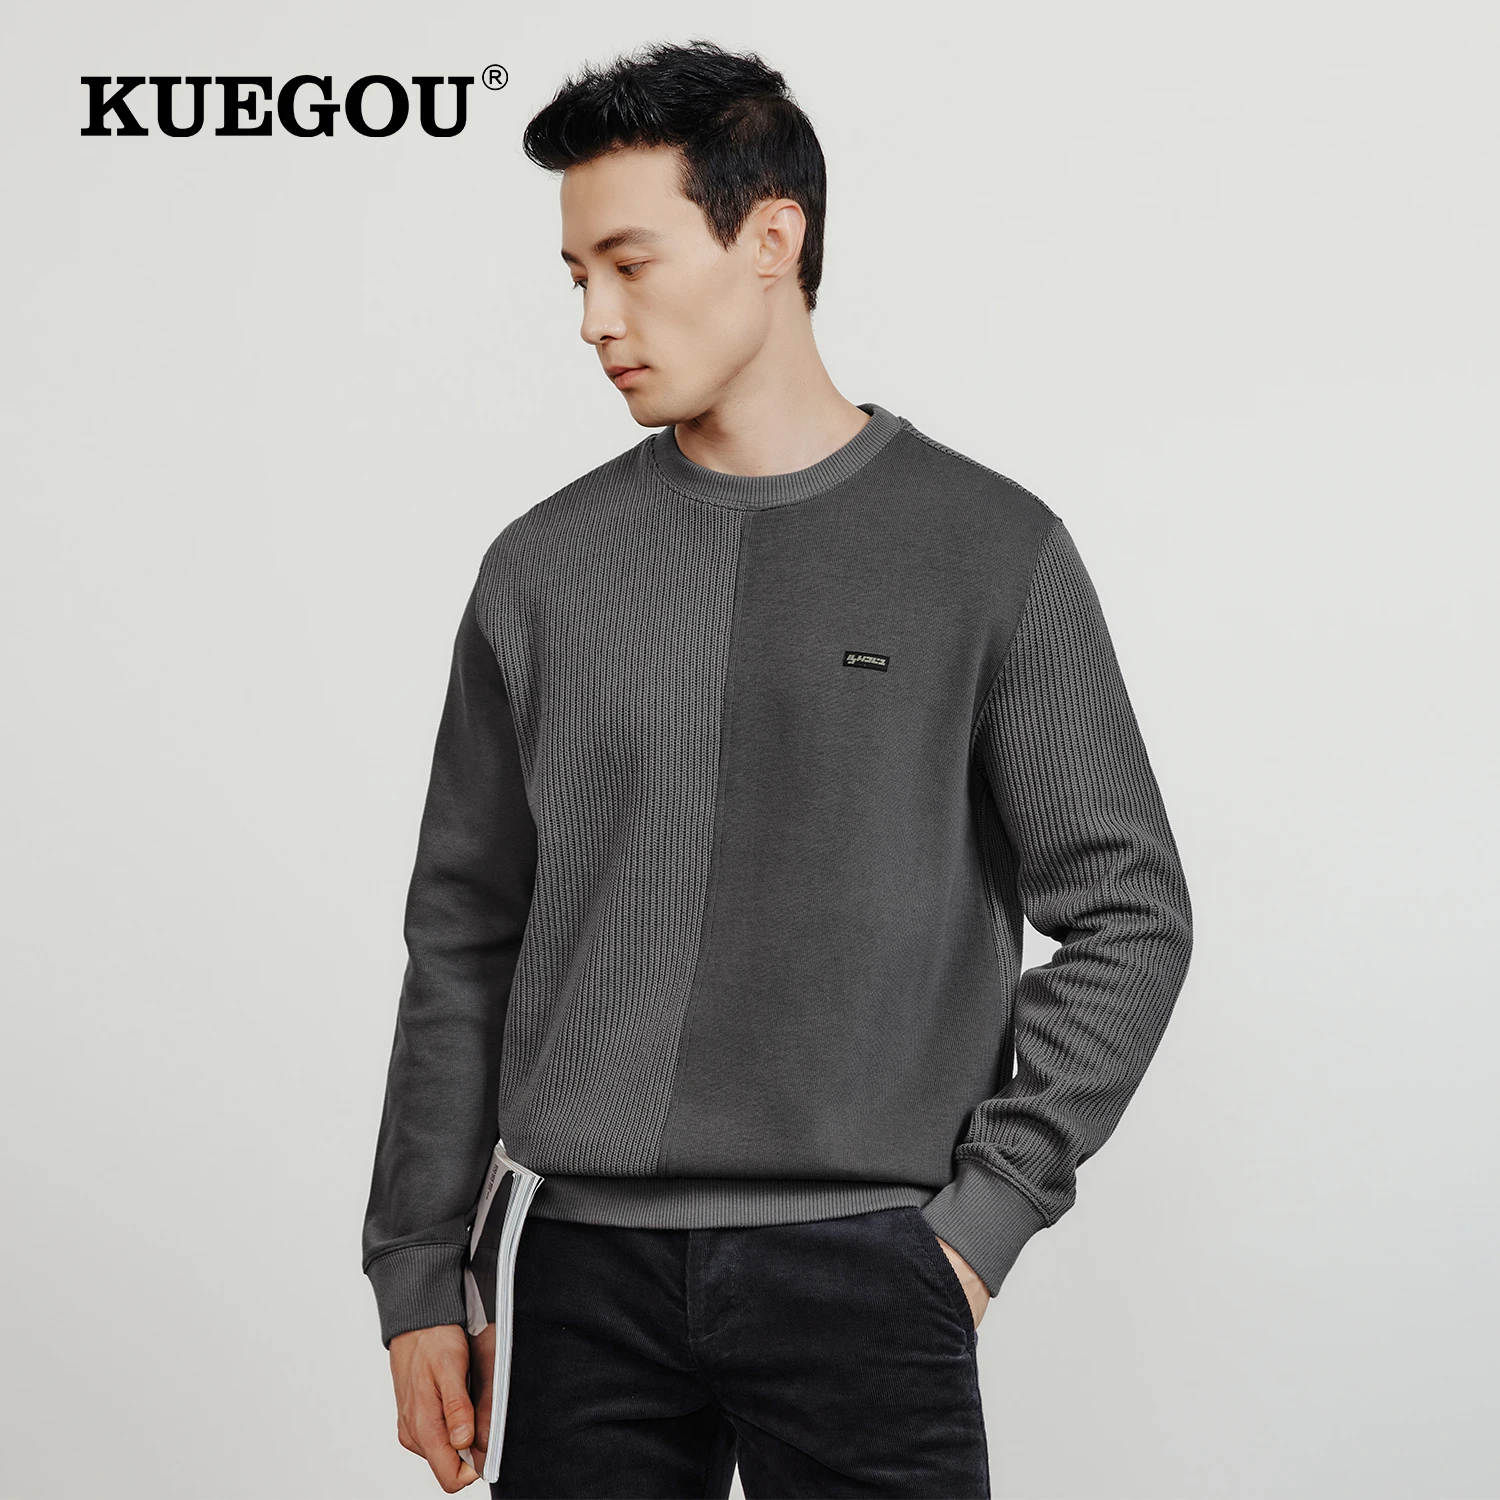 

KUEGOU 2022 Autumn New Men's Sweatshirt Jogger Contrast Color Patchwork Quality Casual Hoodies Cotton Blend Top Plus Size 55062